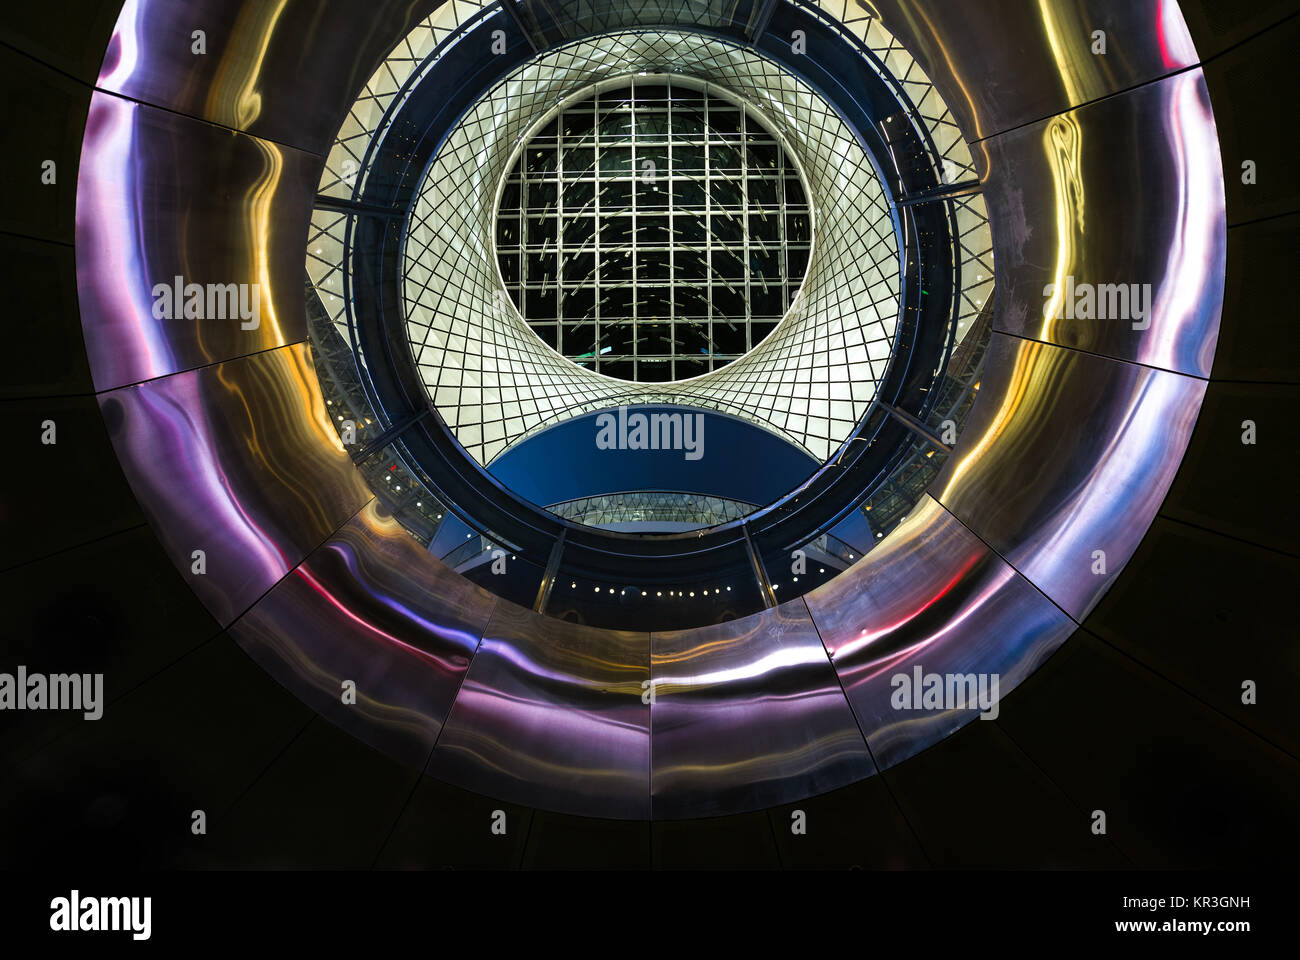 Vue depuis les niveaux inférieurs jusqu'à travers l'oculus de l'Reflector-Net ciel en haut de l'Fulton, moyeu de transport en commun du centre-ville de Manhattan, New York, USA Banque D'Images